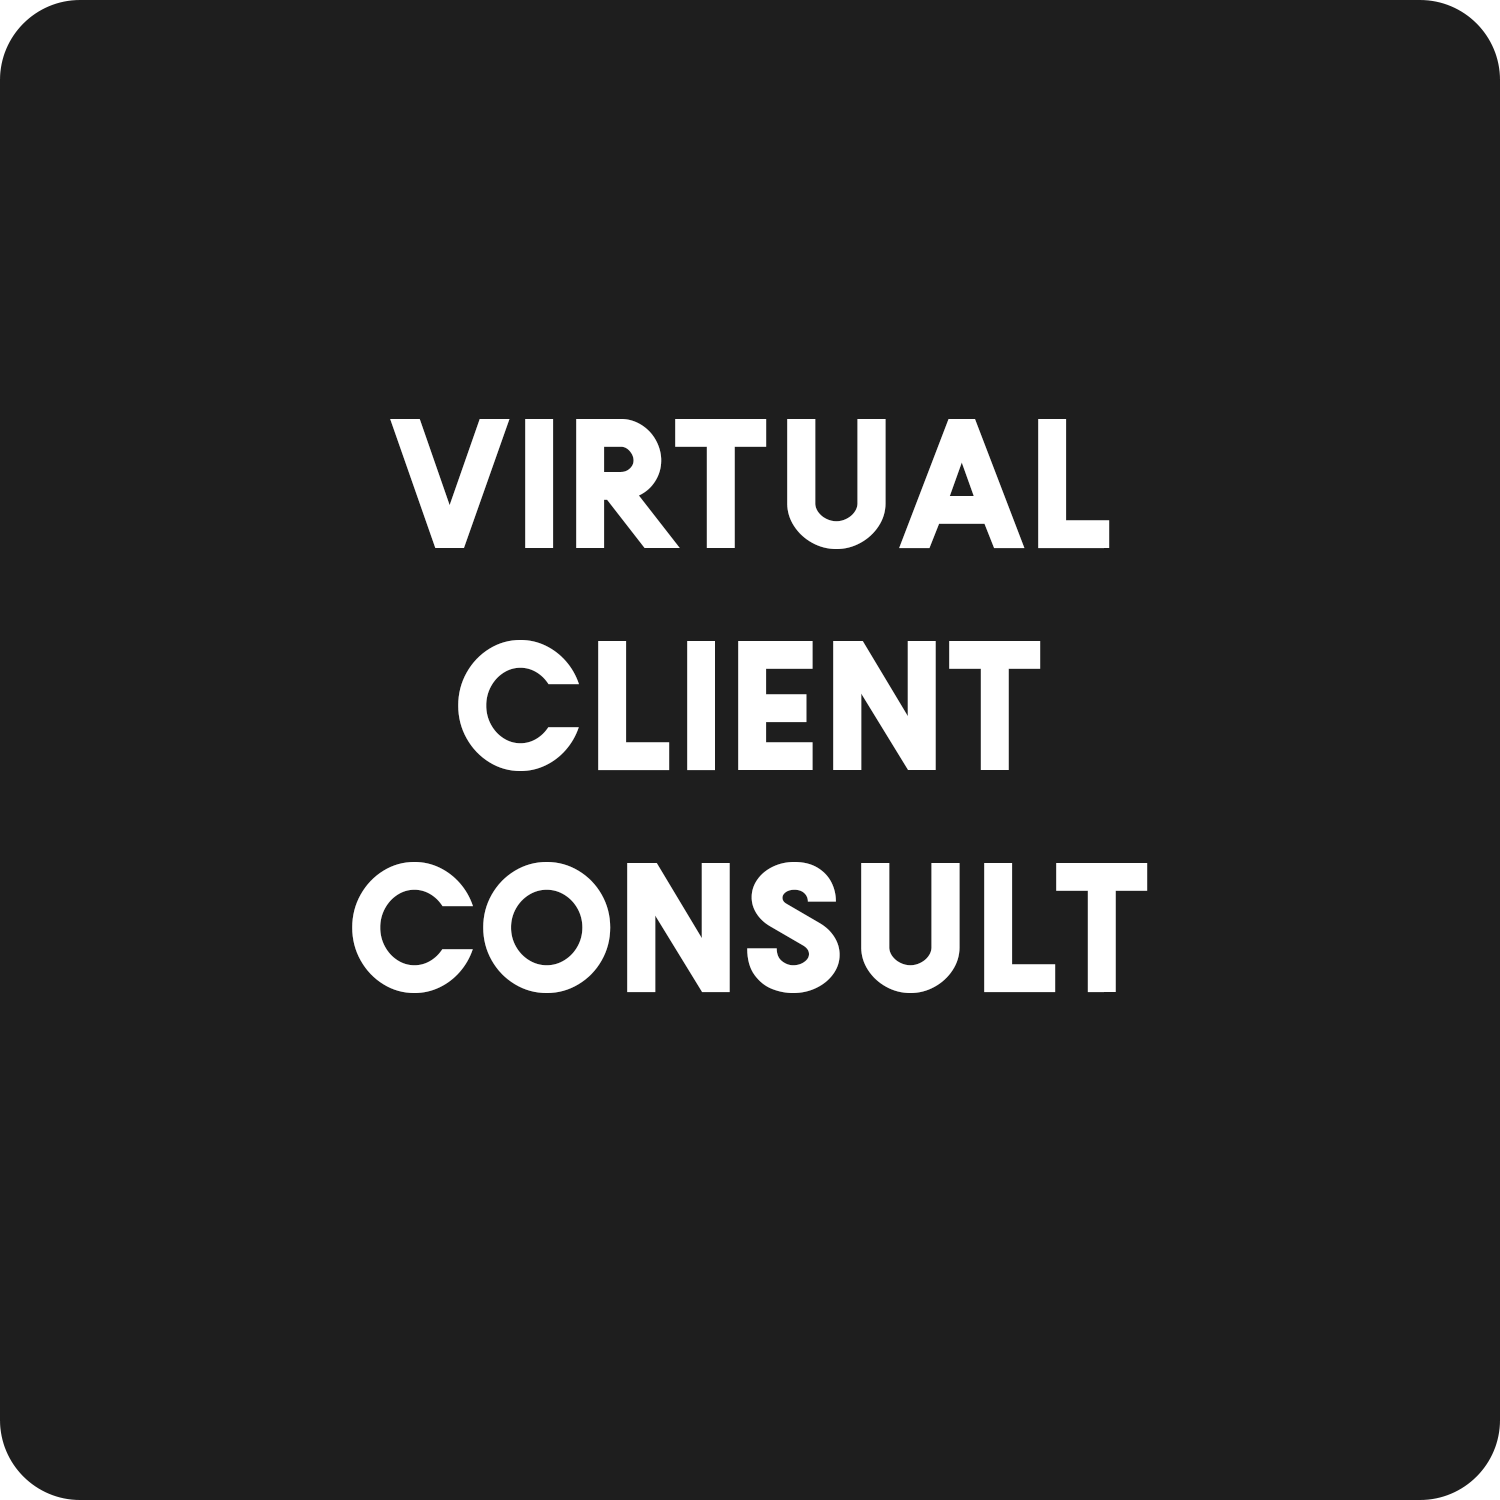 Virtual Client Consult